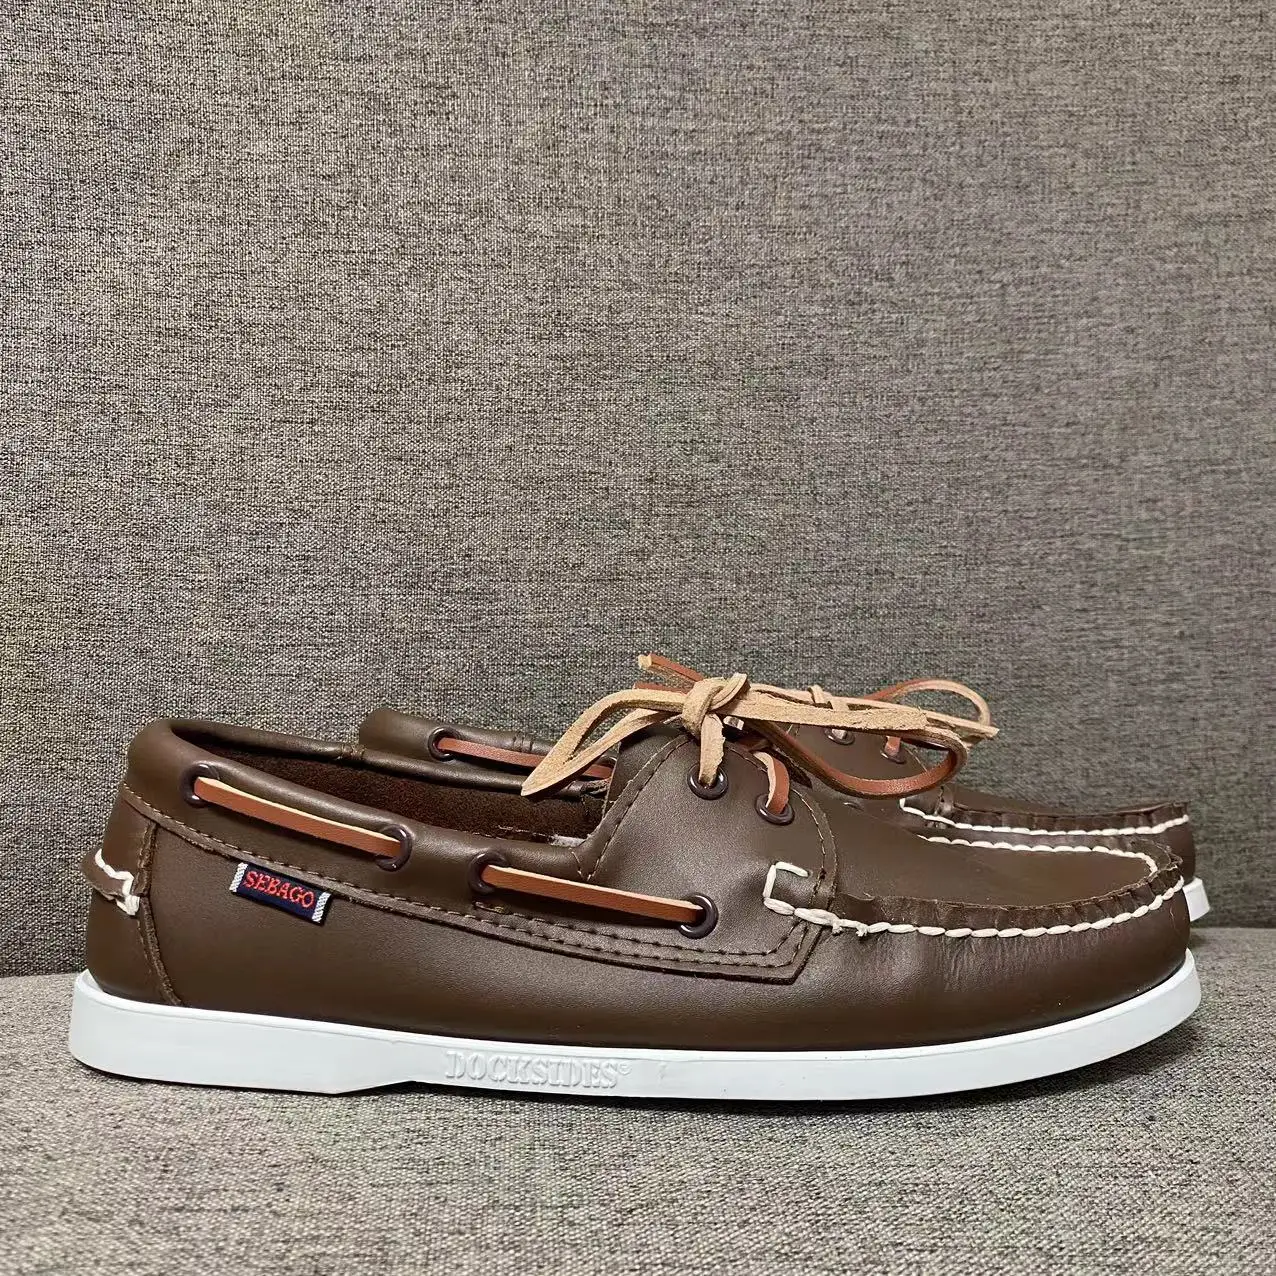 

Men Authentic Sebago Docksides Shoes - Premium Leather Moc Toe Lace Up Boat Shoes AC072